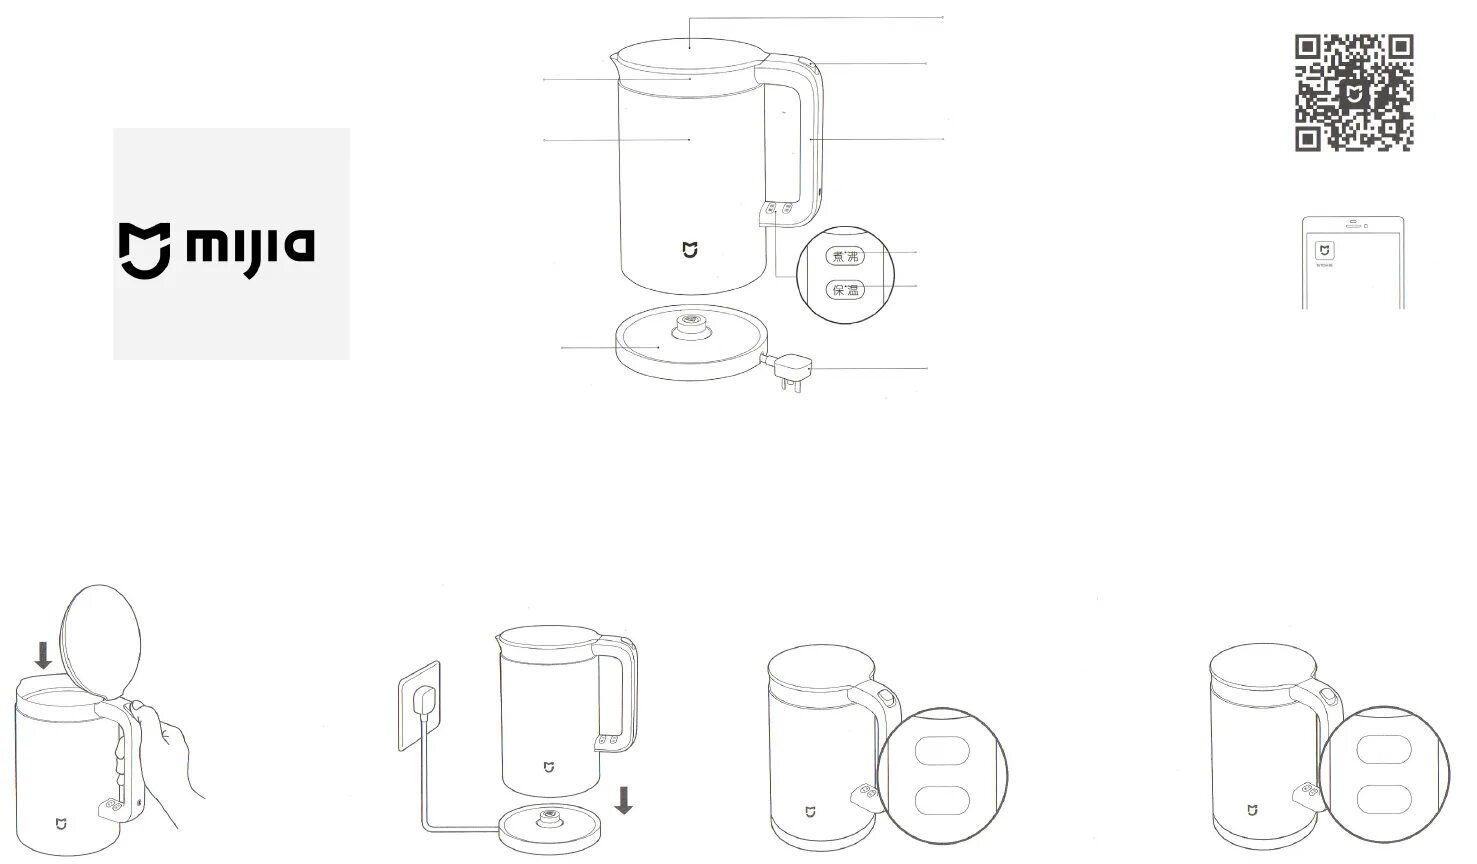 Как подключить пылесос mijia. Схема Xiaomi Smart kettle. Инструкция к чайнику Xiaomi. Электросхема чайника Xiaomi. Чайник Xiaomi Mijia схема платы.